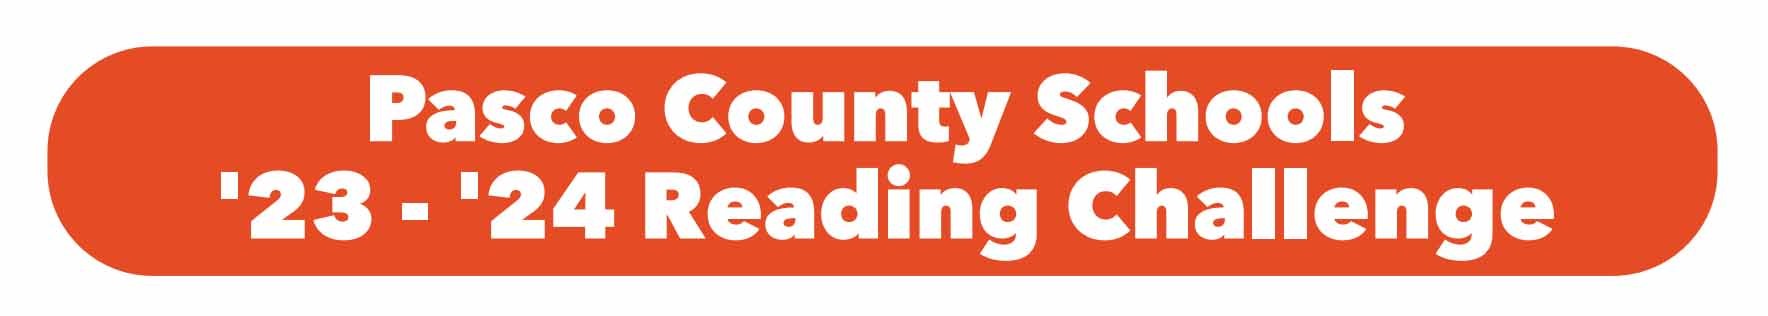 Pasco County Schools 2023 - 2024 Reading Challenge